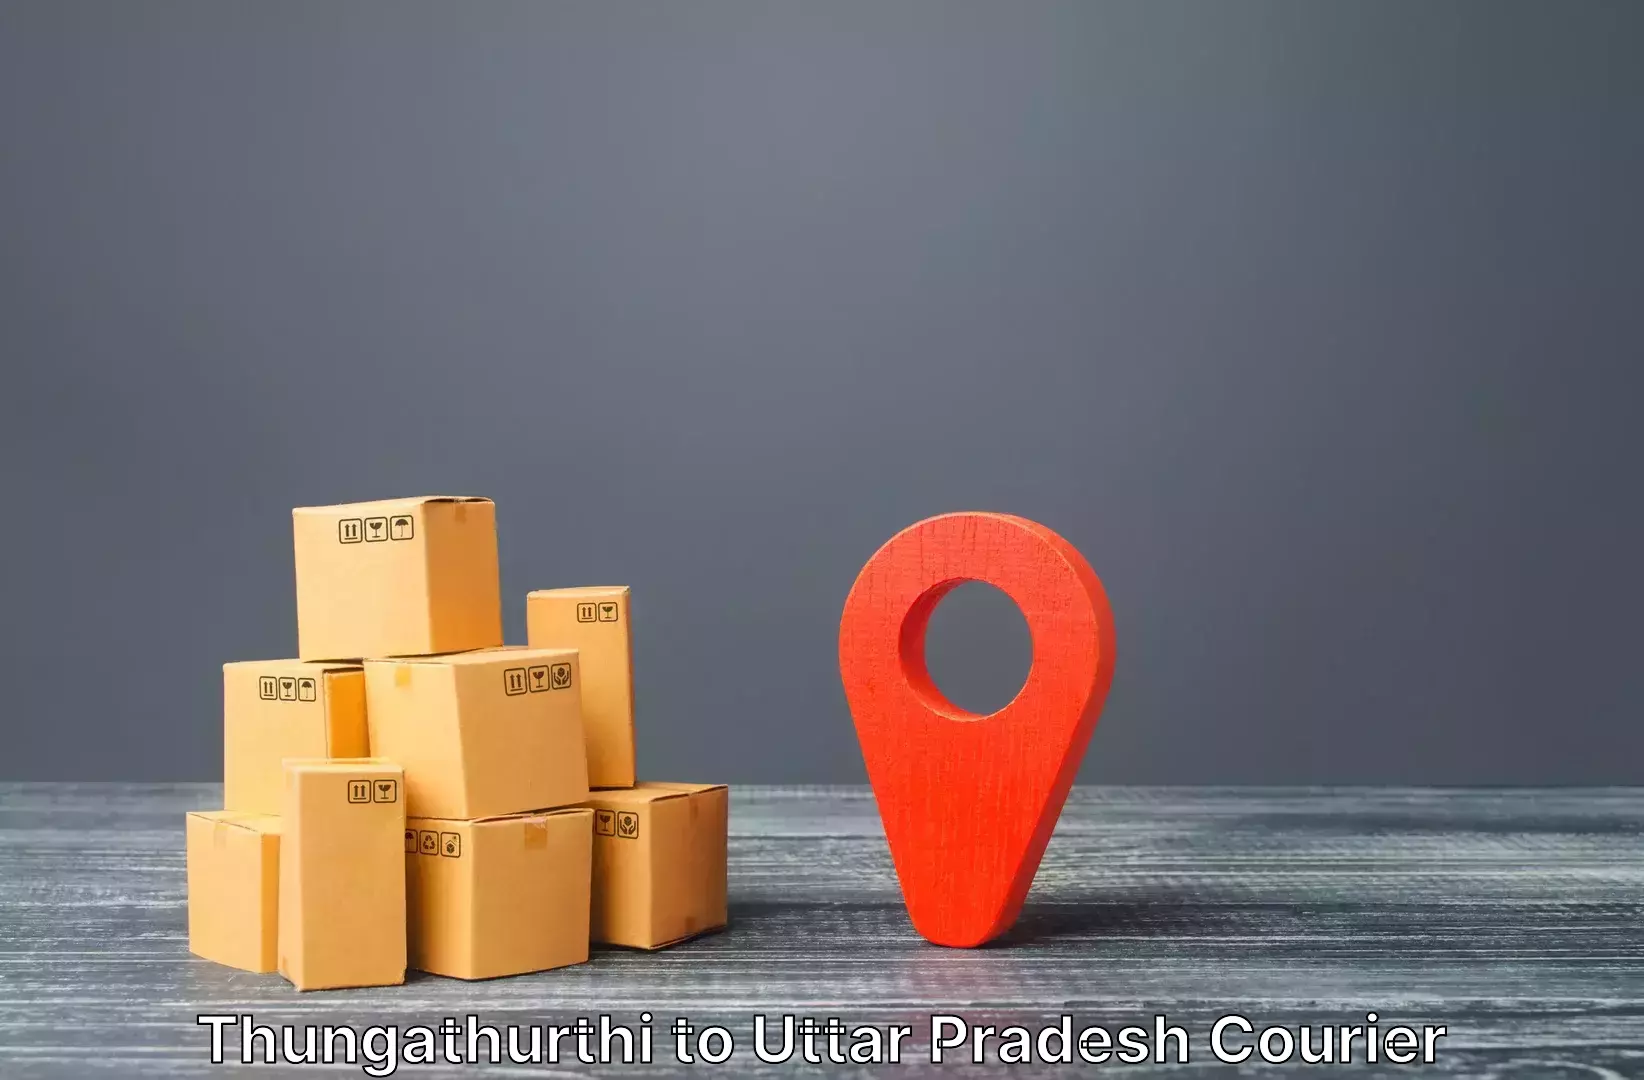 Luggage transport deals in Thungathurthi to Bulandshahr